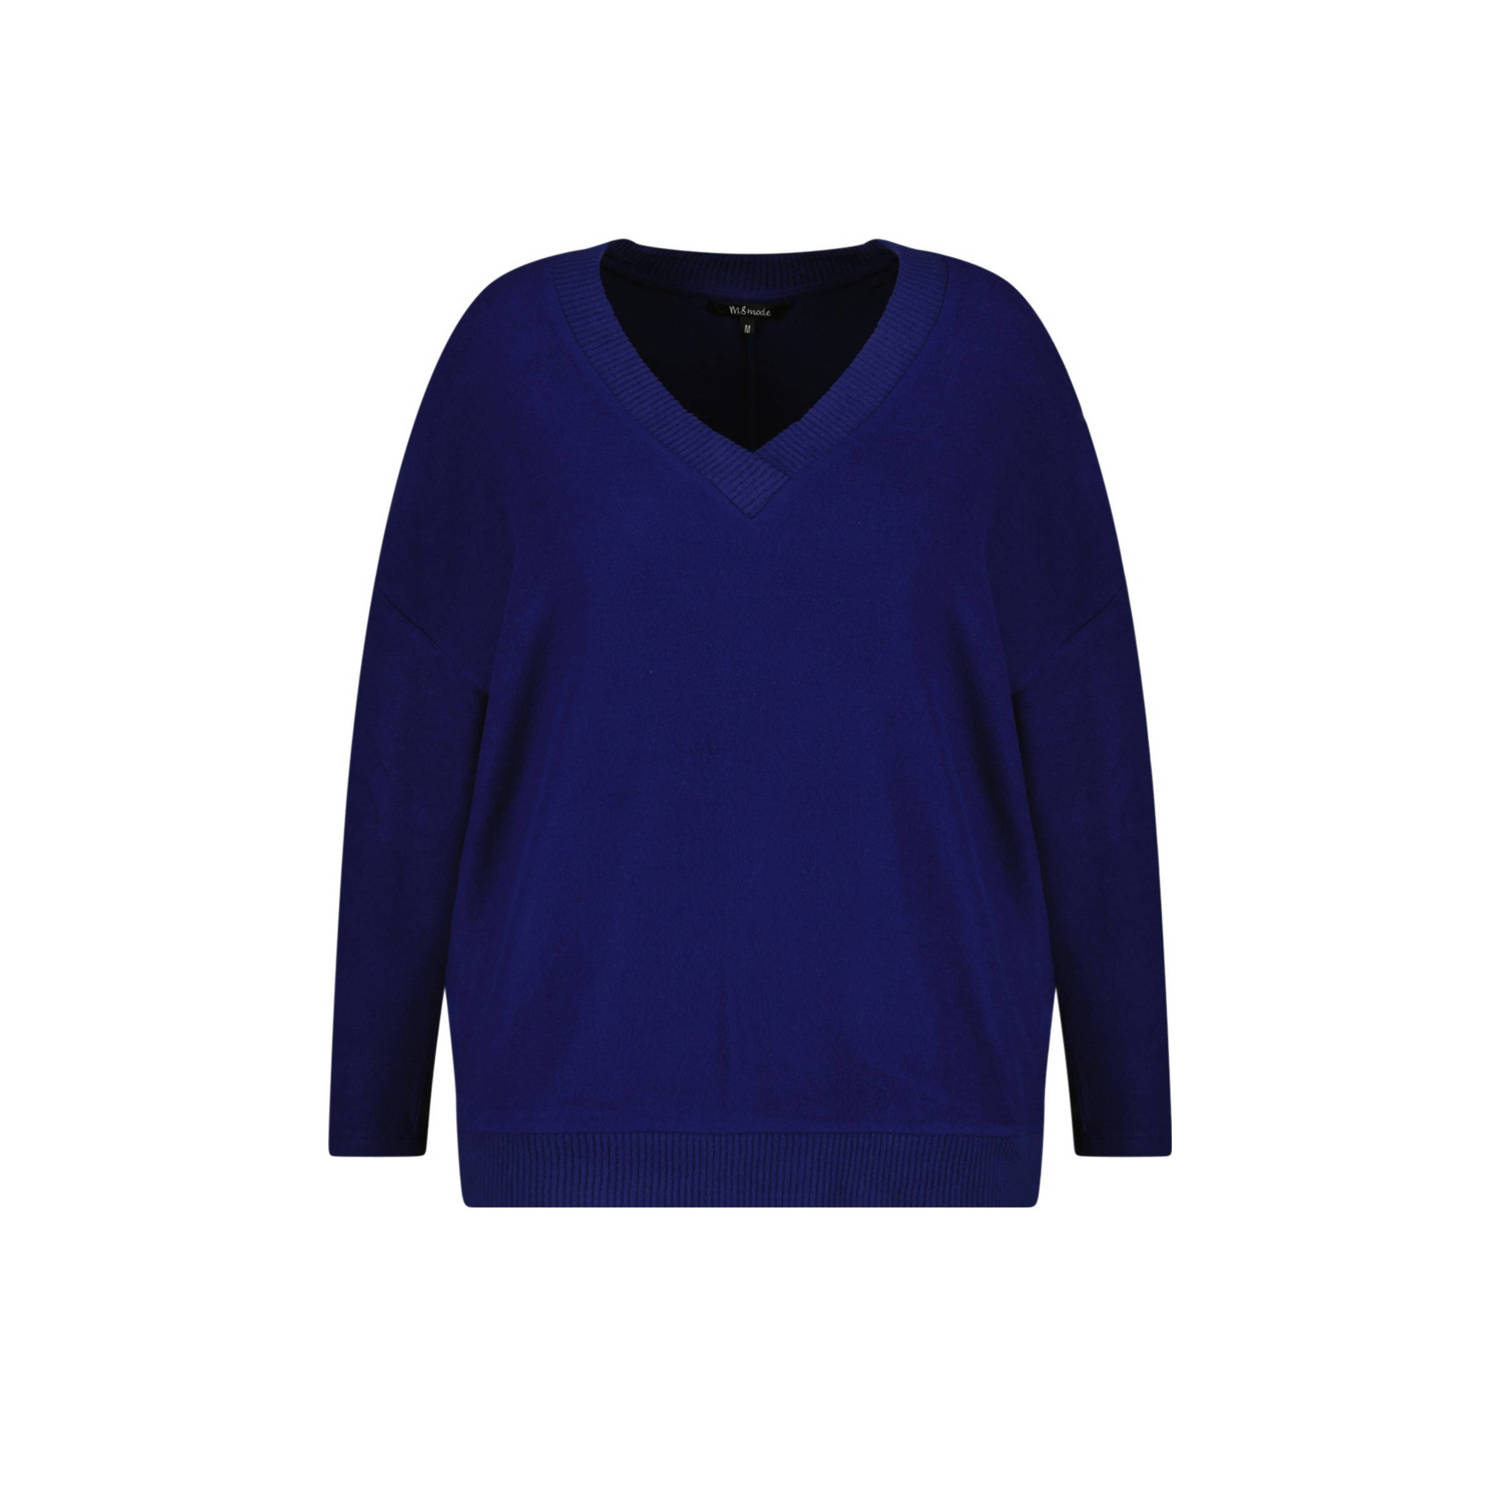 MS Mode fijngebreide trui donkerblauw